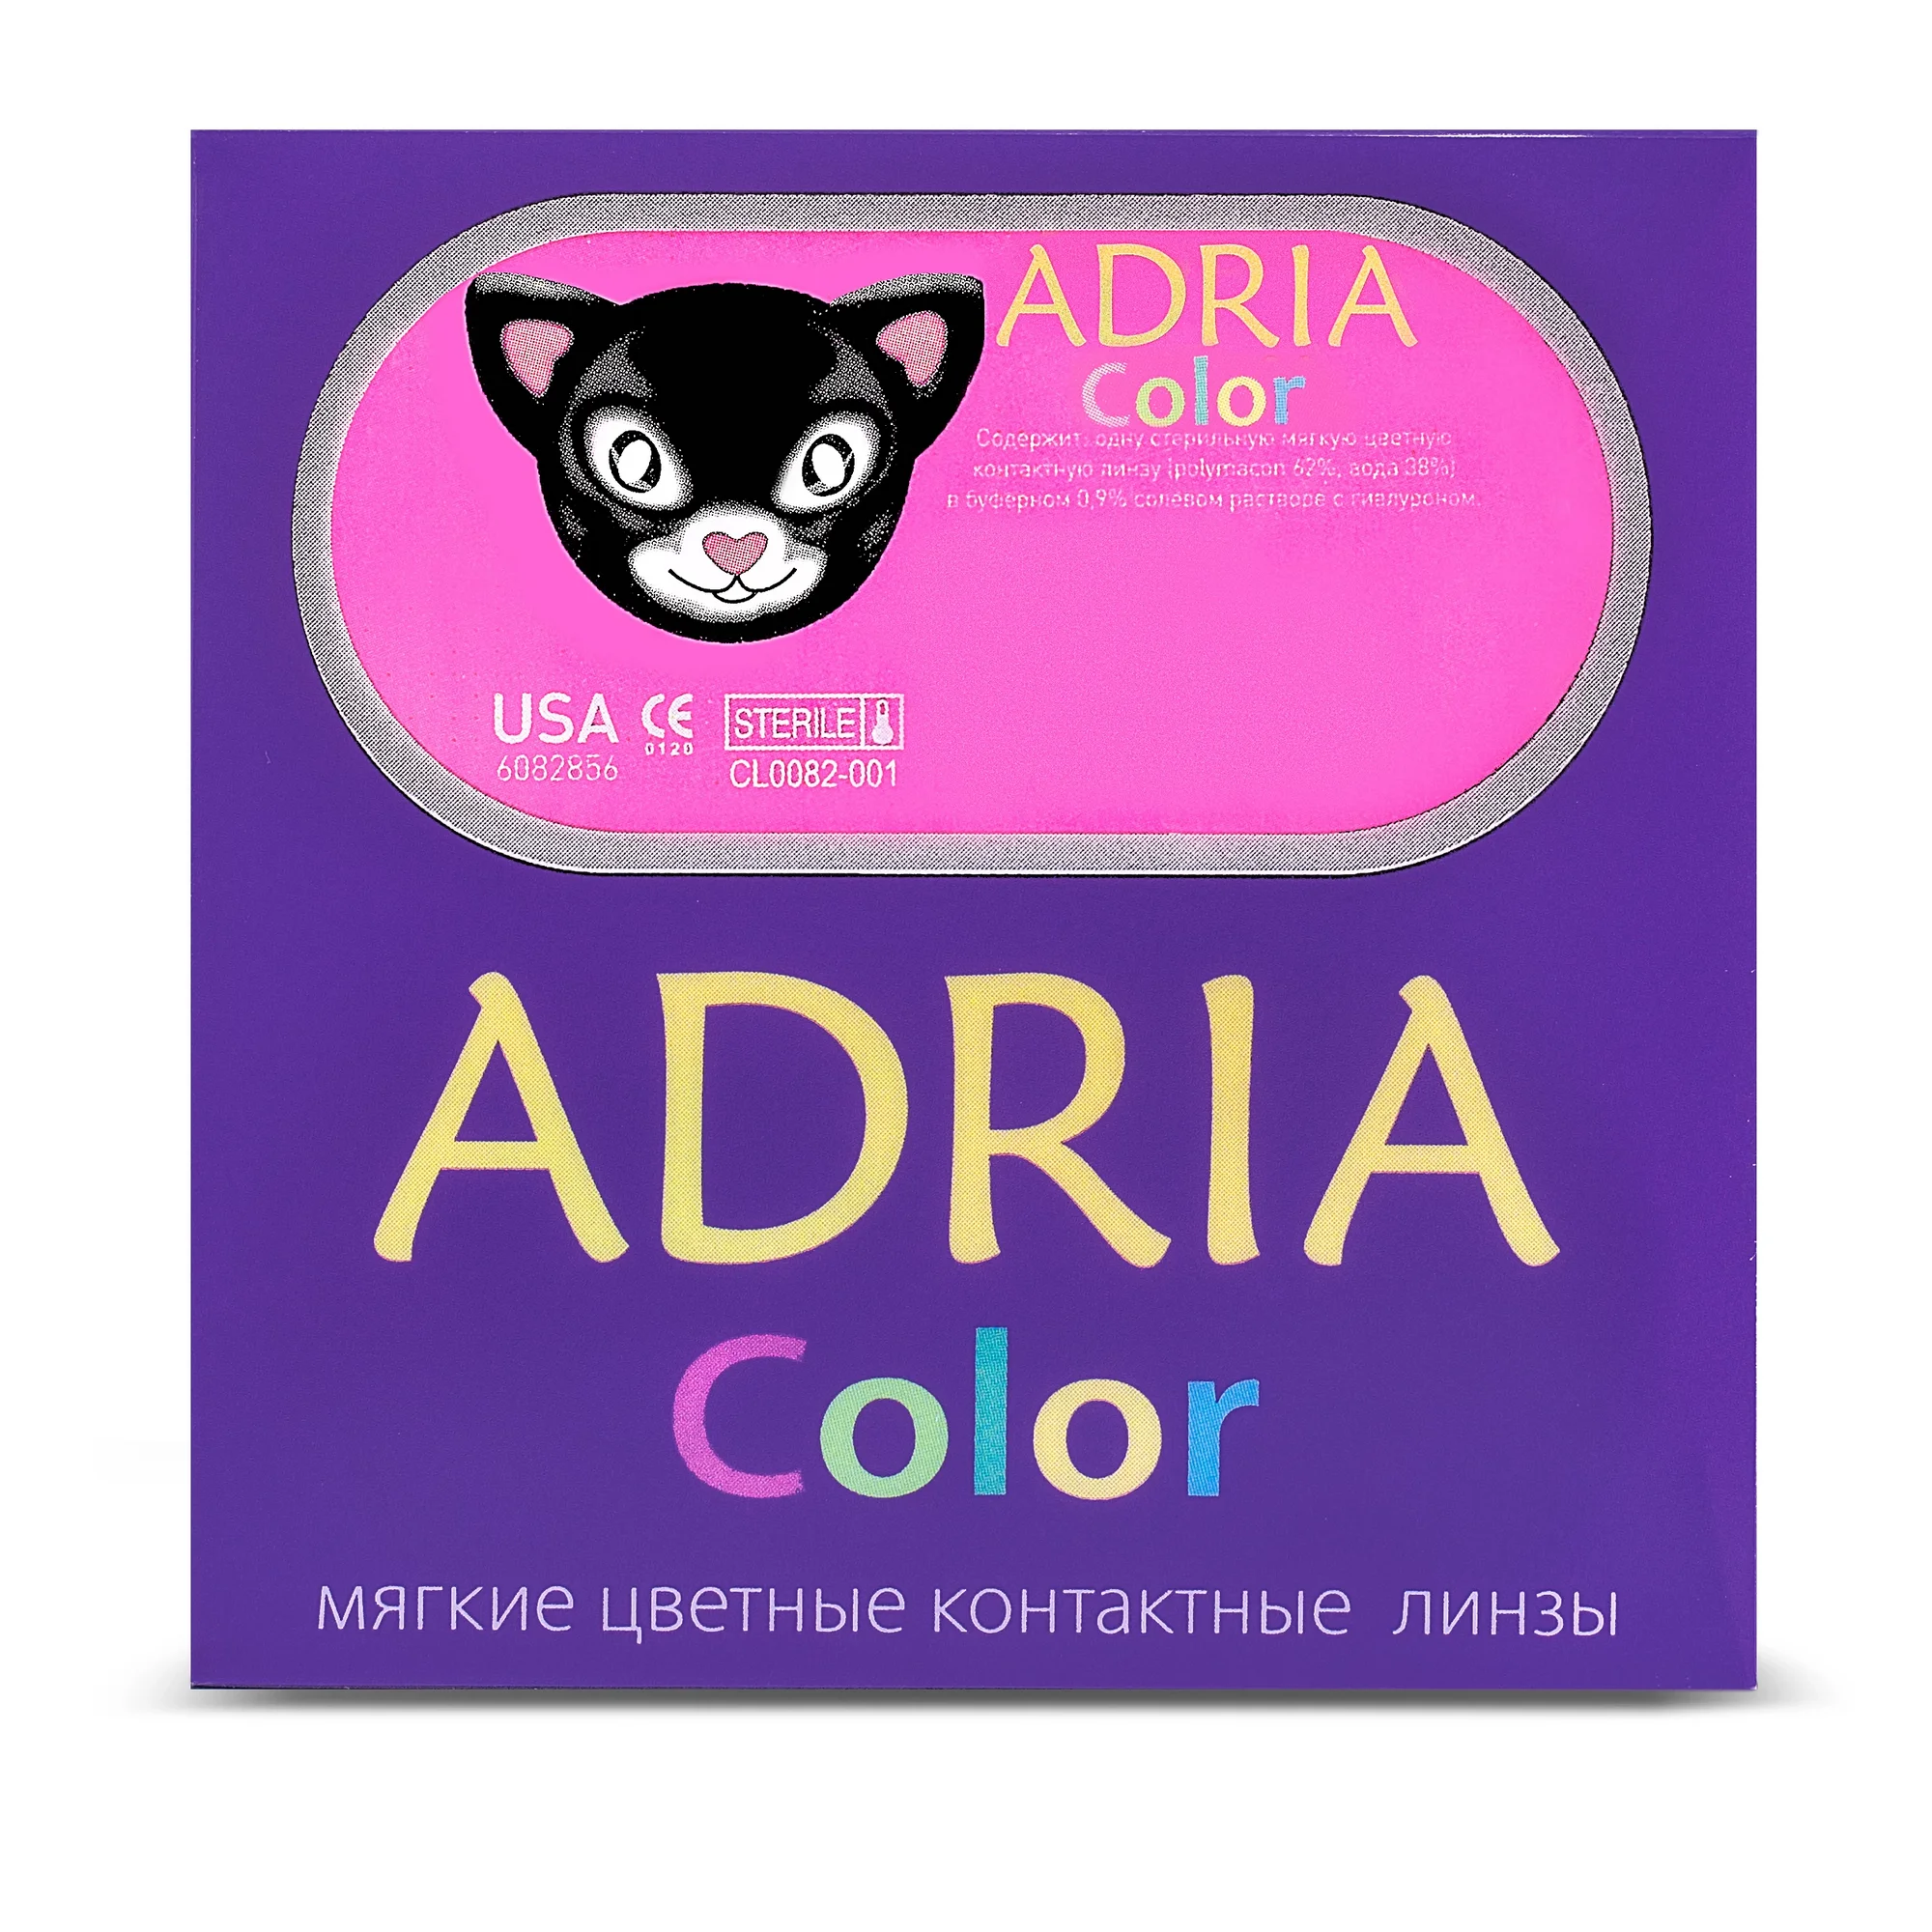 COLOR BOX ADRIA Color 2 Tone Amethyst (сиреневый)